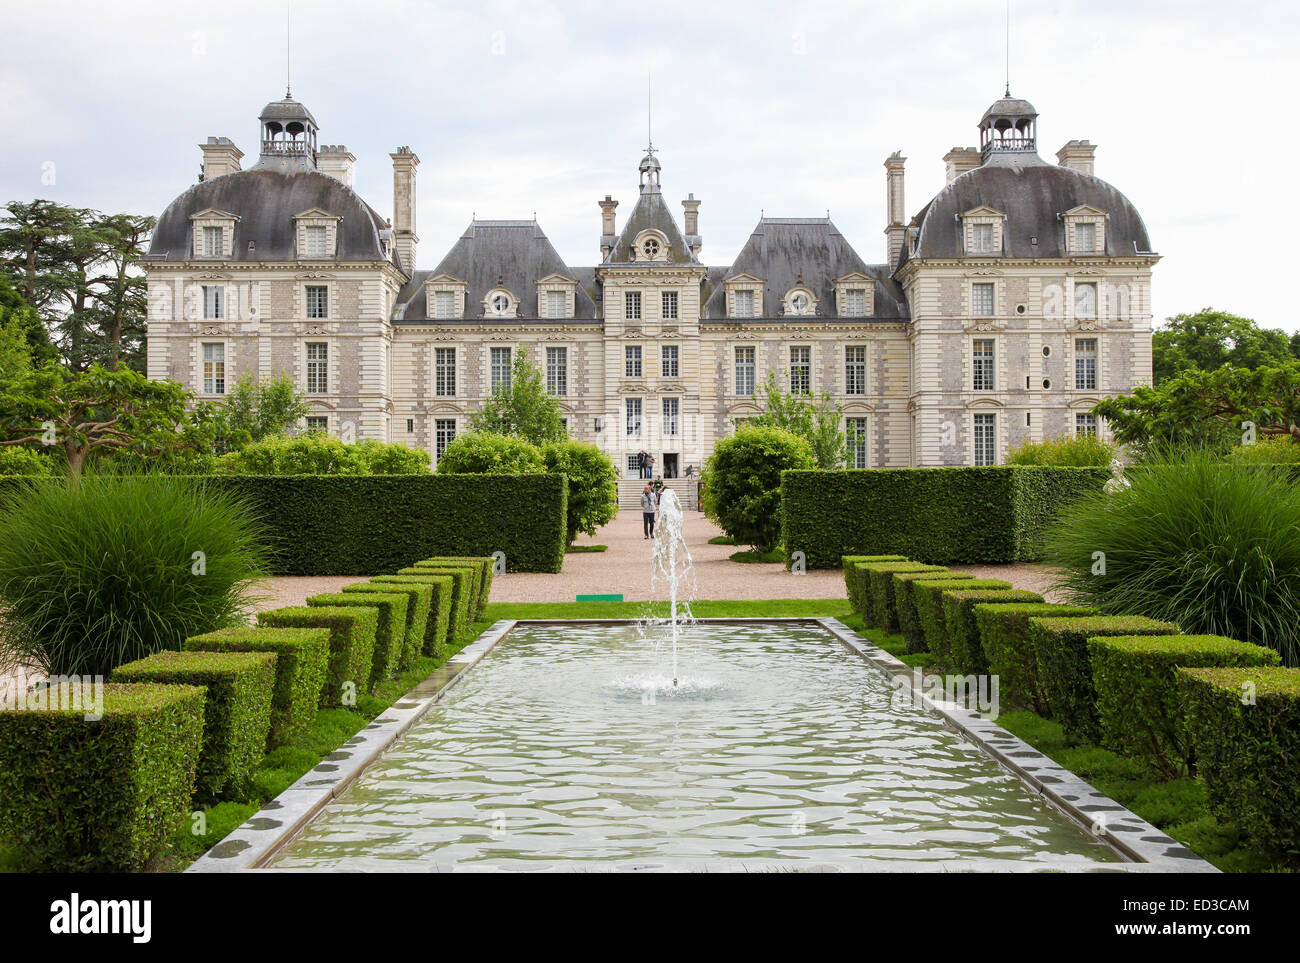 CHEVERNY, Francia - 24 de mayo de 2014: Chateau de Cheverny, un famoso castillo del valle del Loira en Loir-et-Cher en Francia Foto de stock